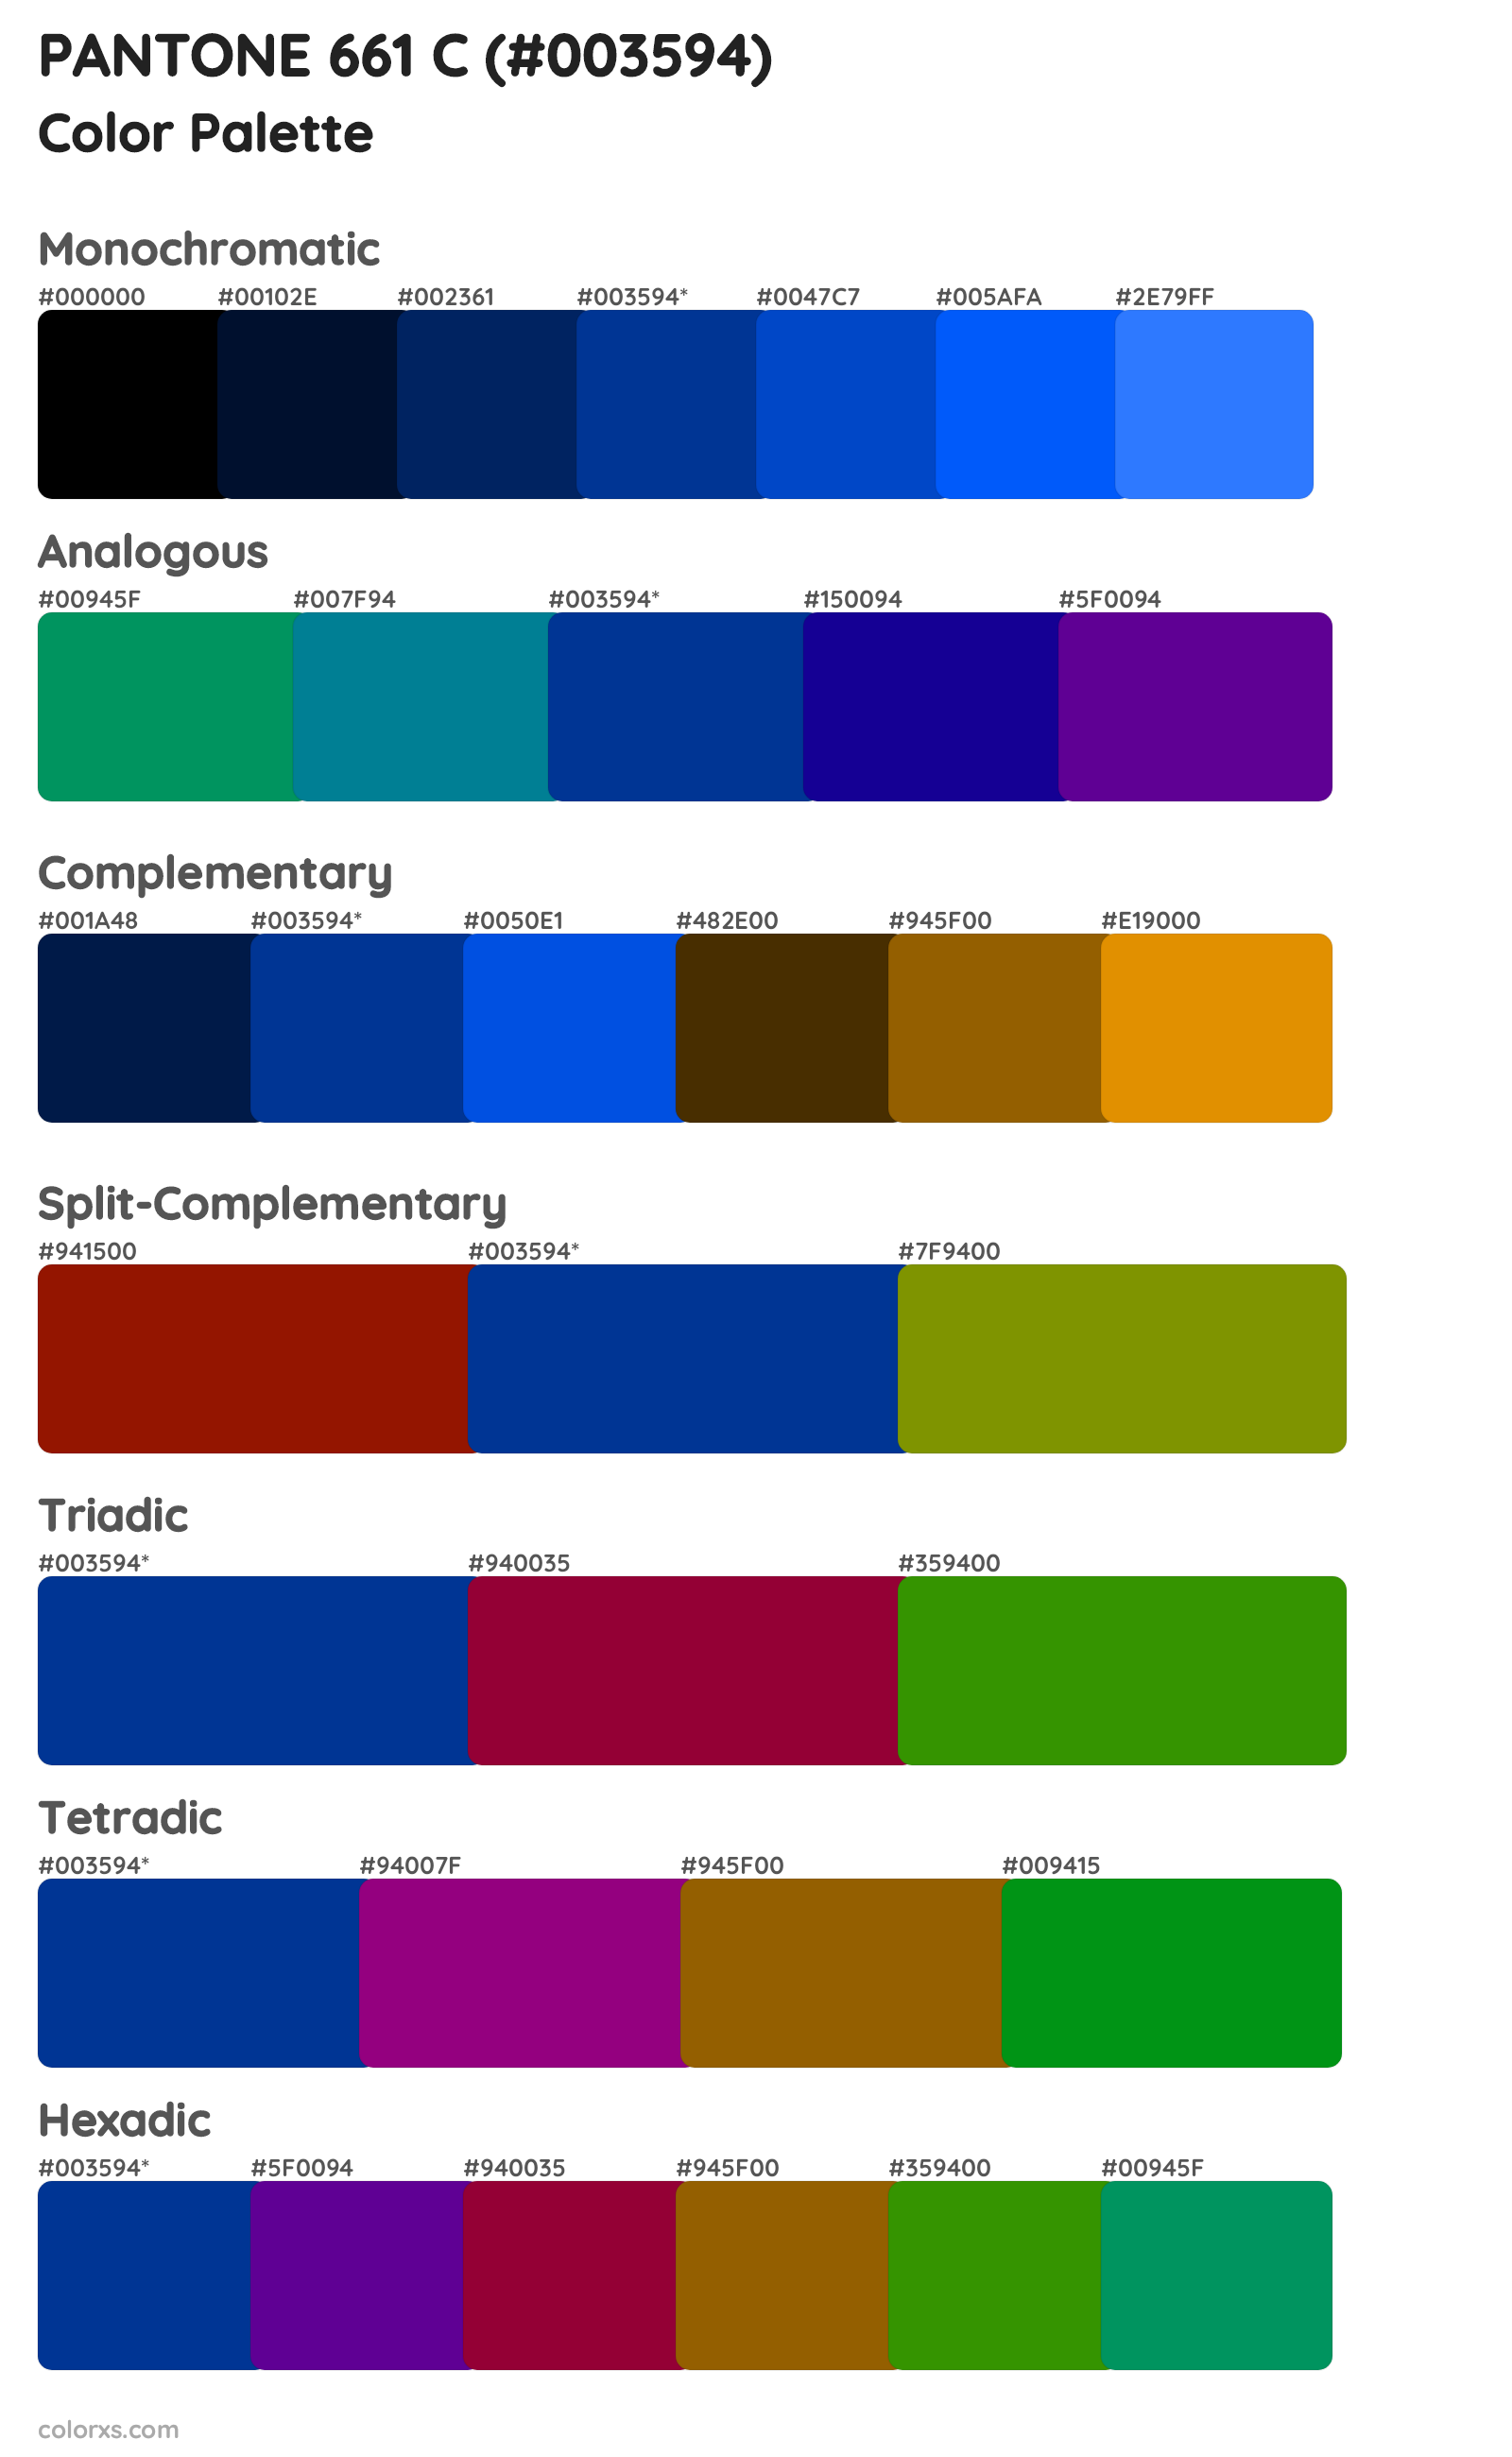 PANTONE 661 C Color Scheme Palettes